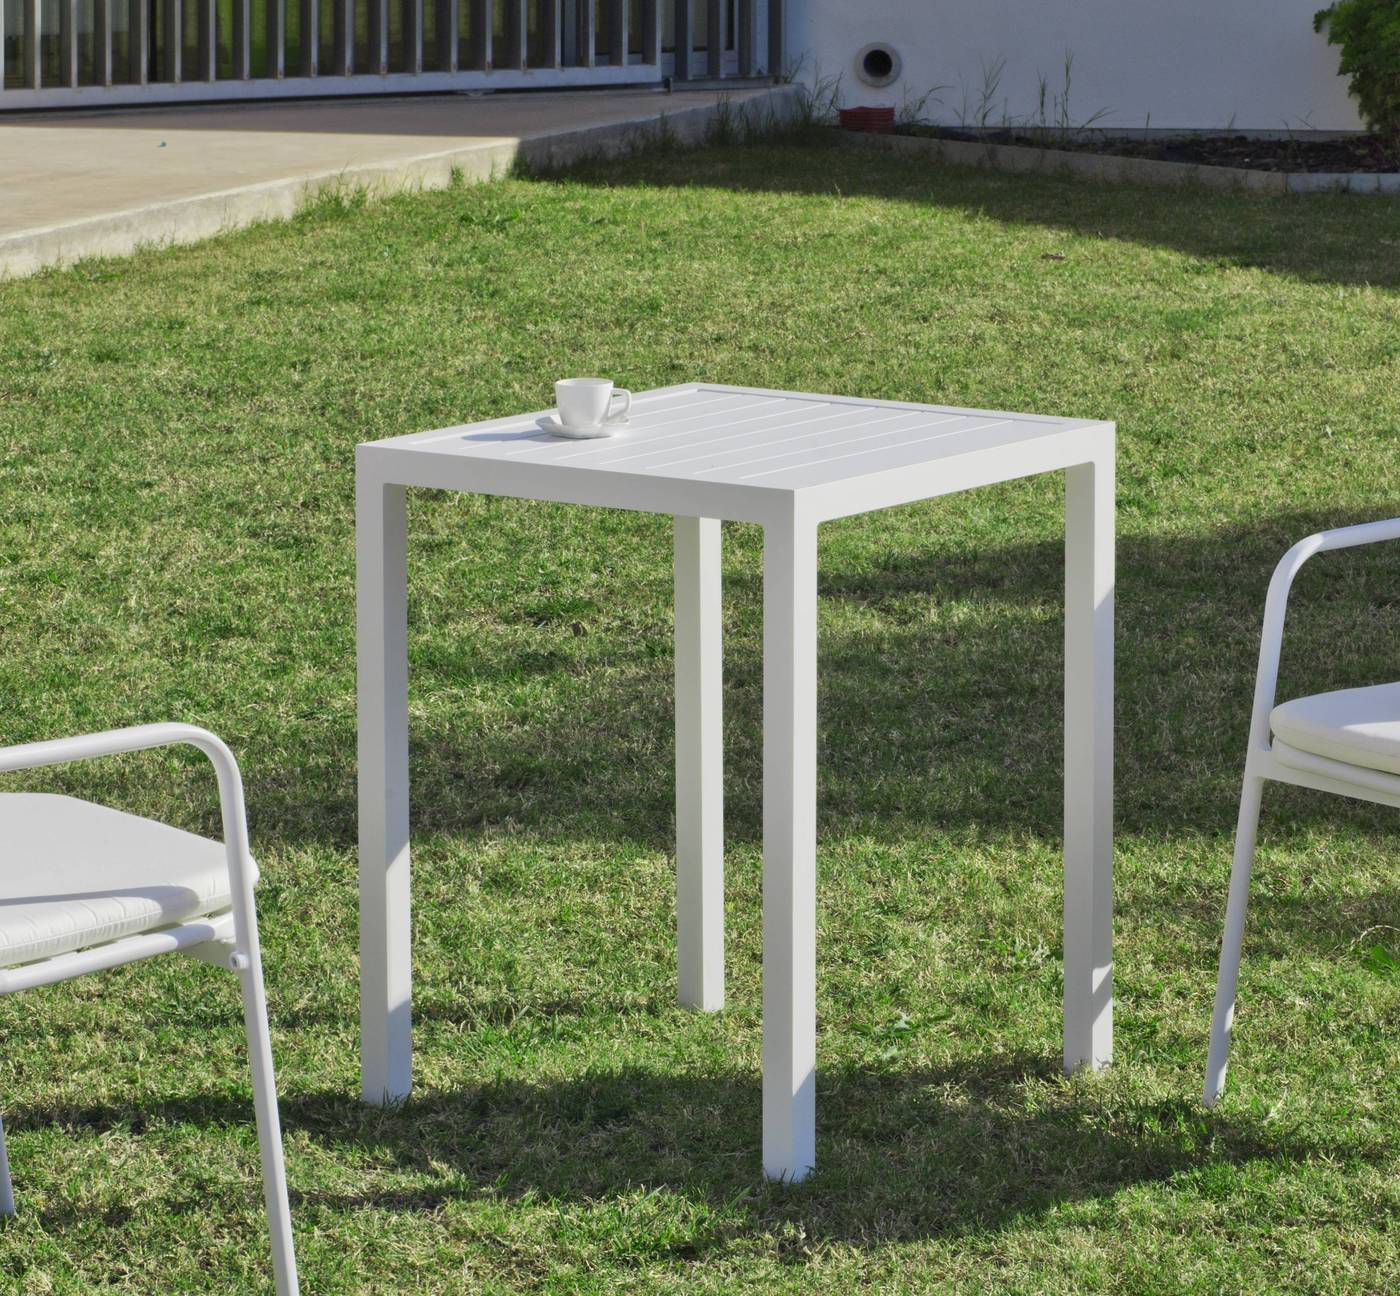 Set Aluminio Melea-Maxim 80-4 - Conjunto apilable de aluminio luxe: mesa cuadrada de 80 cm. + 4 sillones. Disponible en color blanco y color antracita.